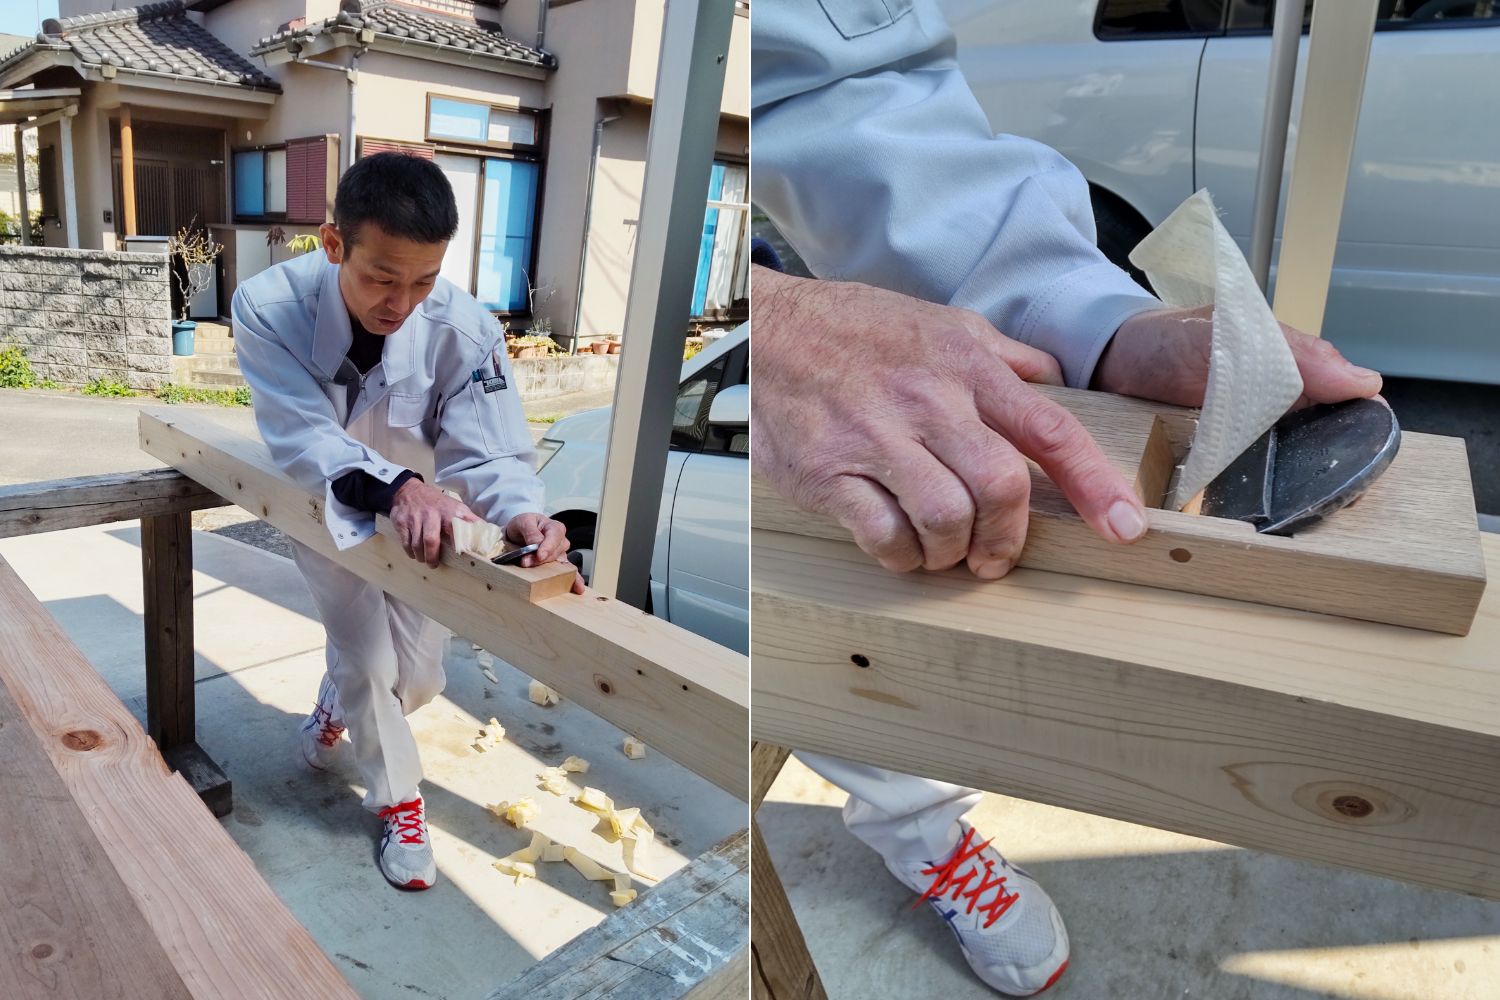 鉋削り日本一の棟梁のもとで磨いた田中さんの技術。薄くて綺麗な鉋くずがふわりと舞うと、なんともいい香りが広がる。